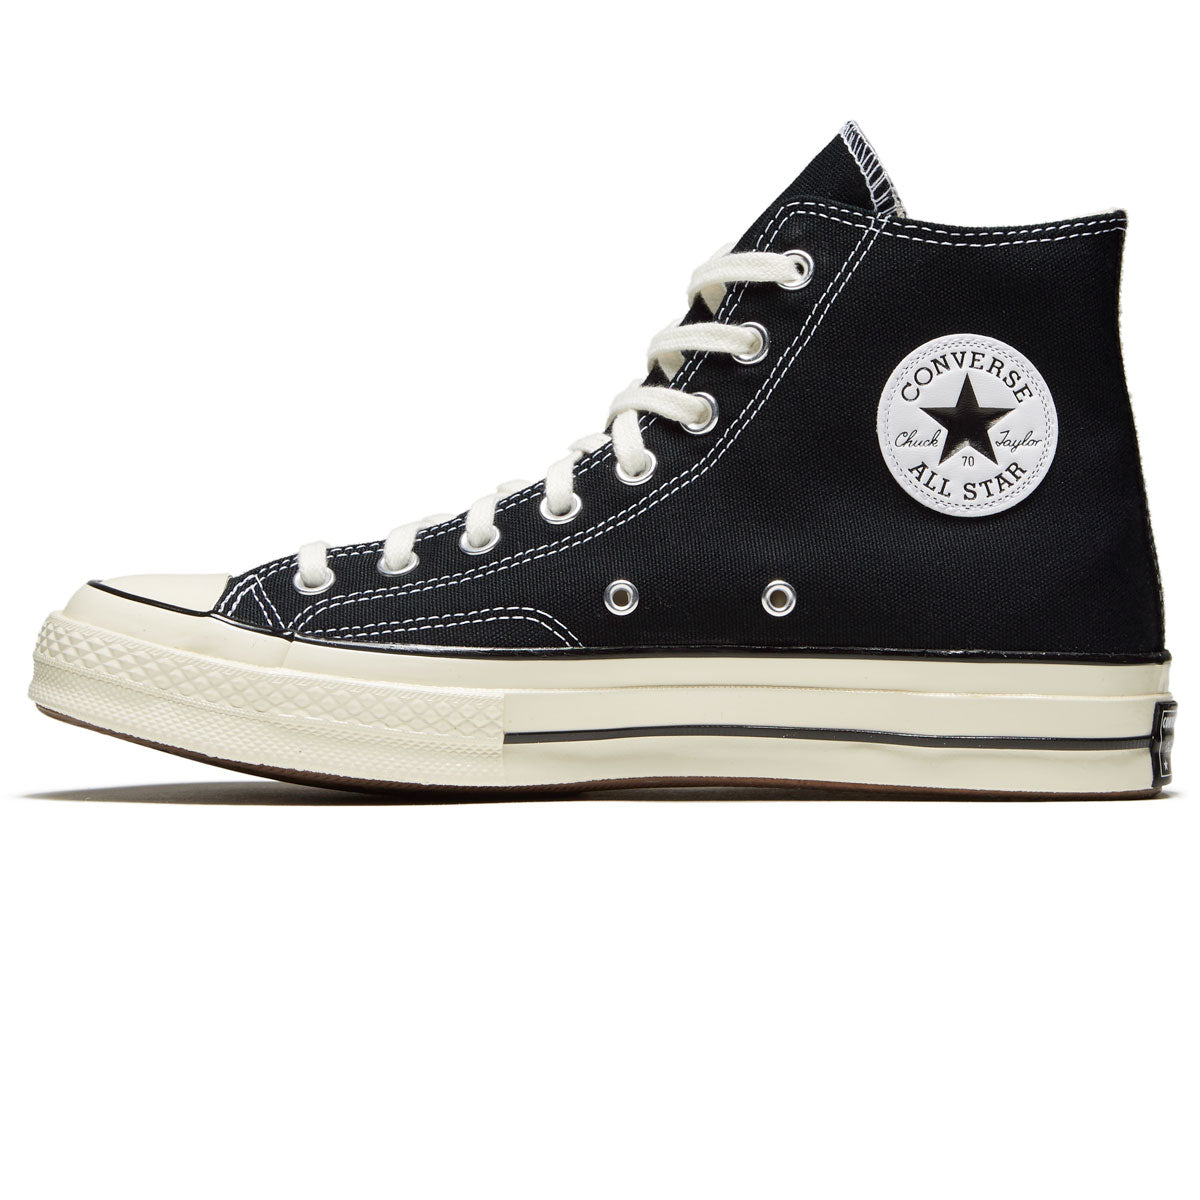 Converse Chuck 70 Hi Shoes - Black/Black/Egret image 2